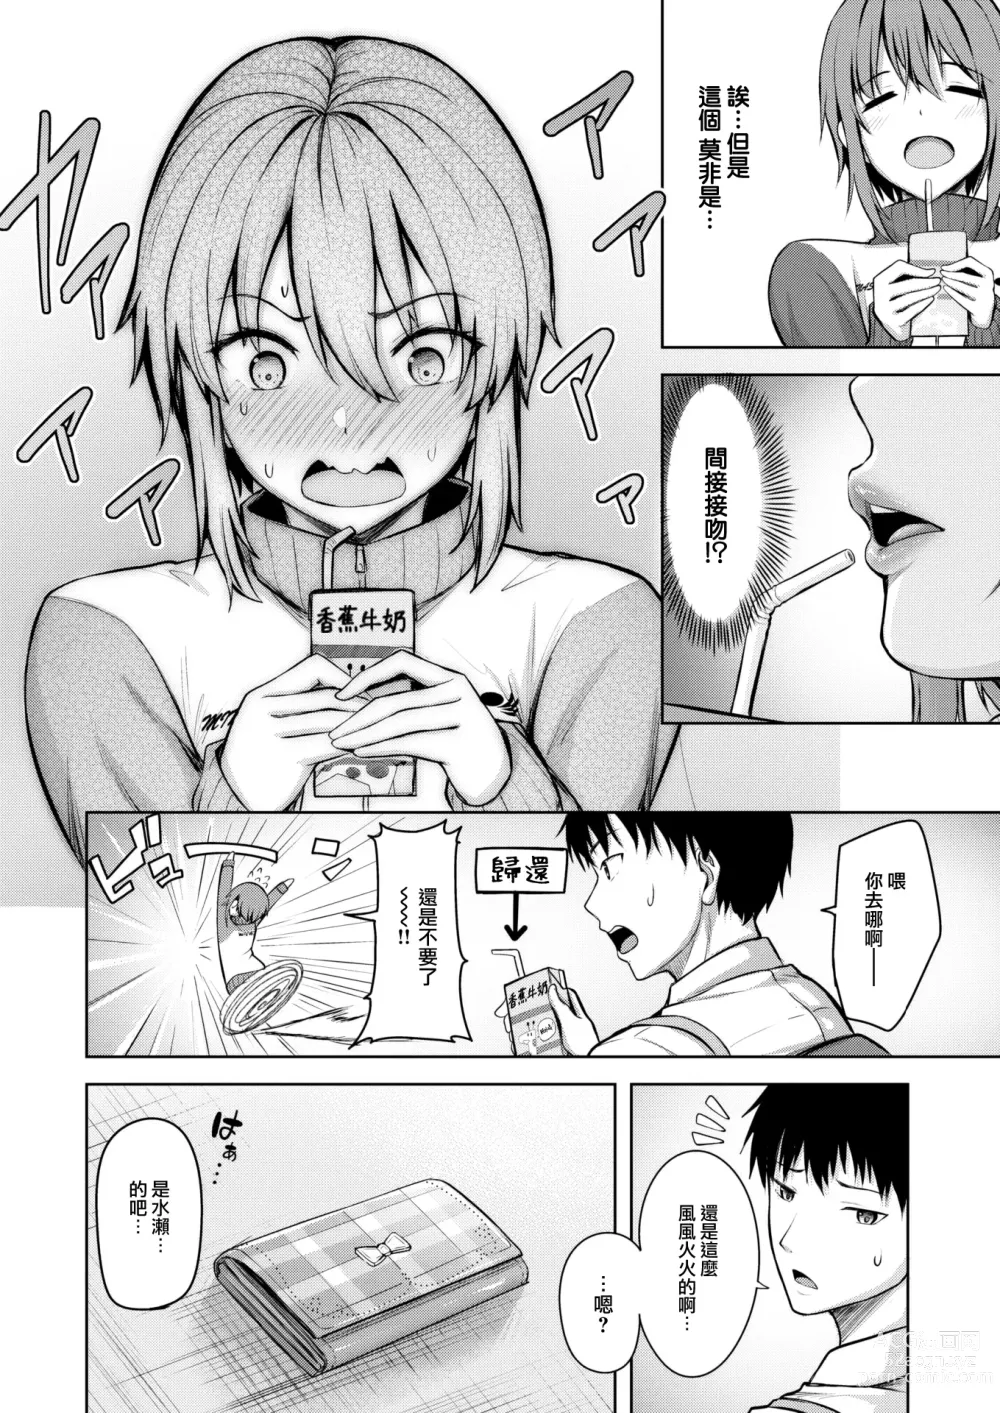 Page 5 of manga Start line